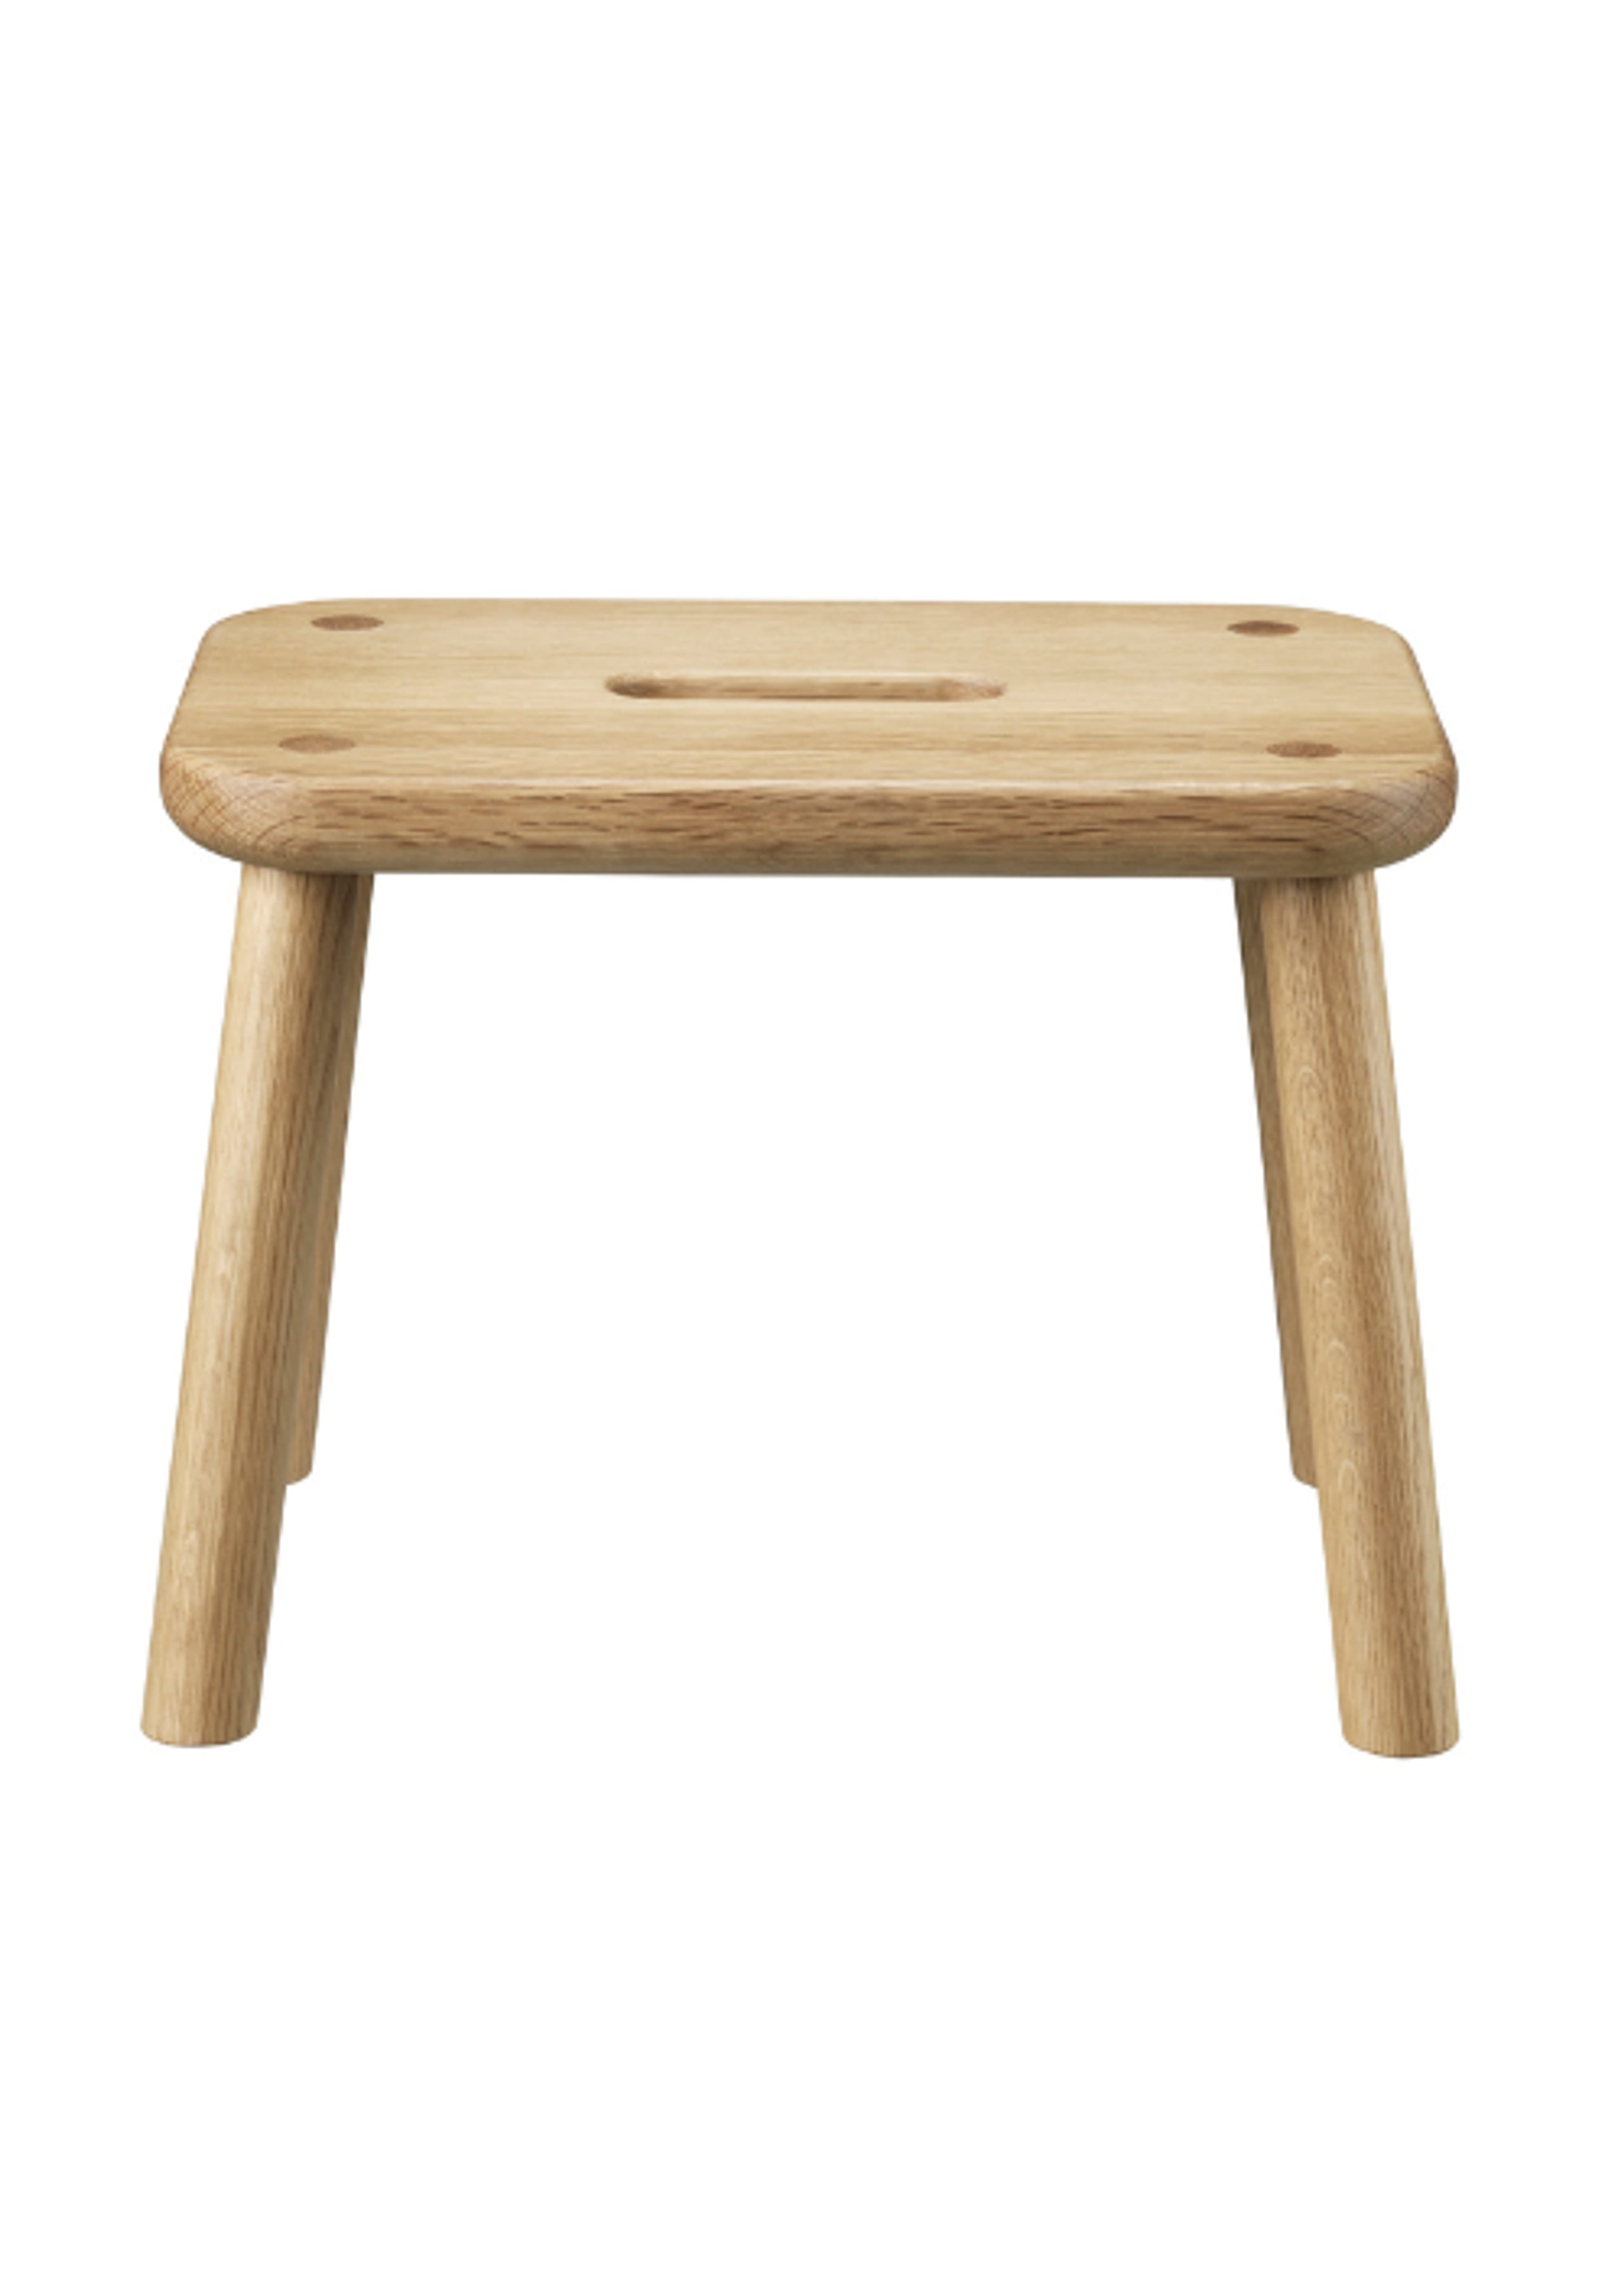 FDB Møbler / Furniture - Stool - J181 - Sønderup - Taburet - Oak